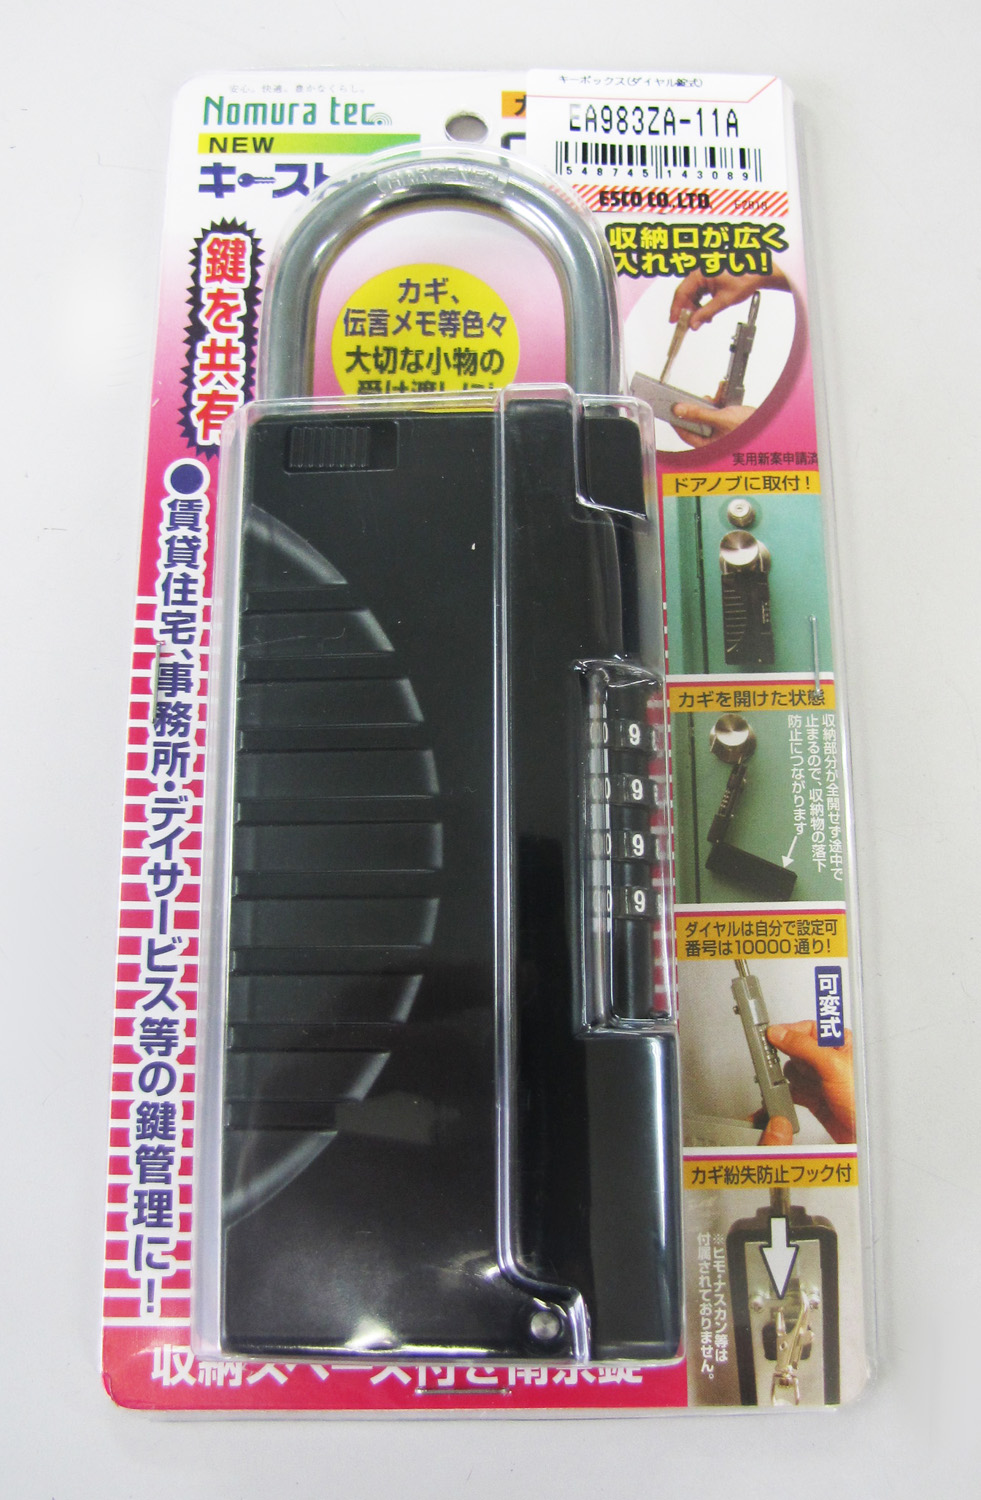 Ea9za 11a キーボックス ダイヤル錠式 のページ Sakkey エスコの商品を検索